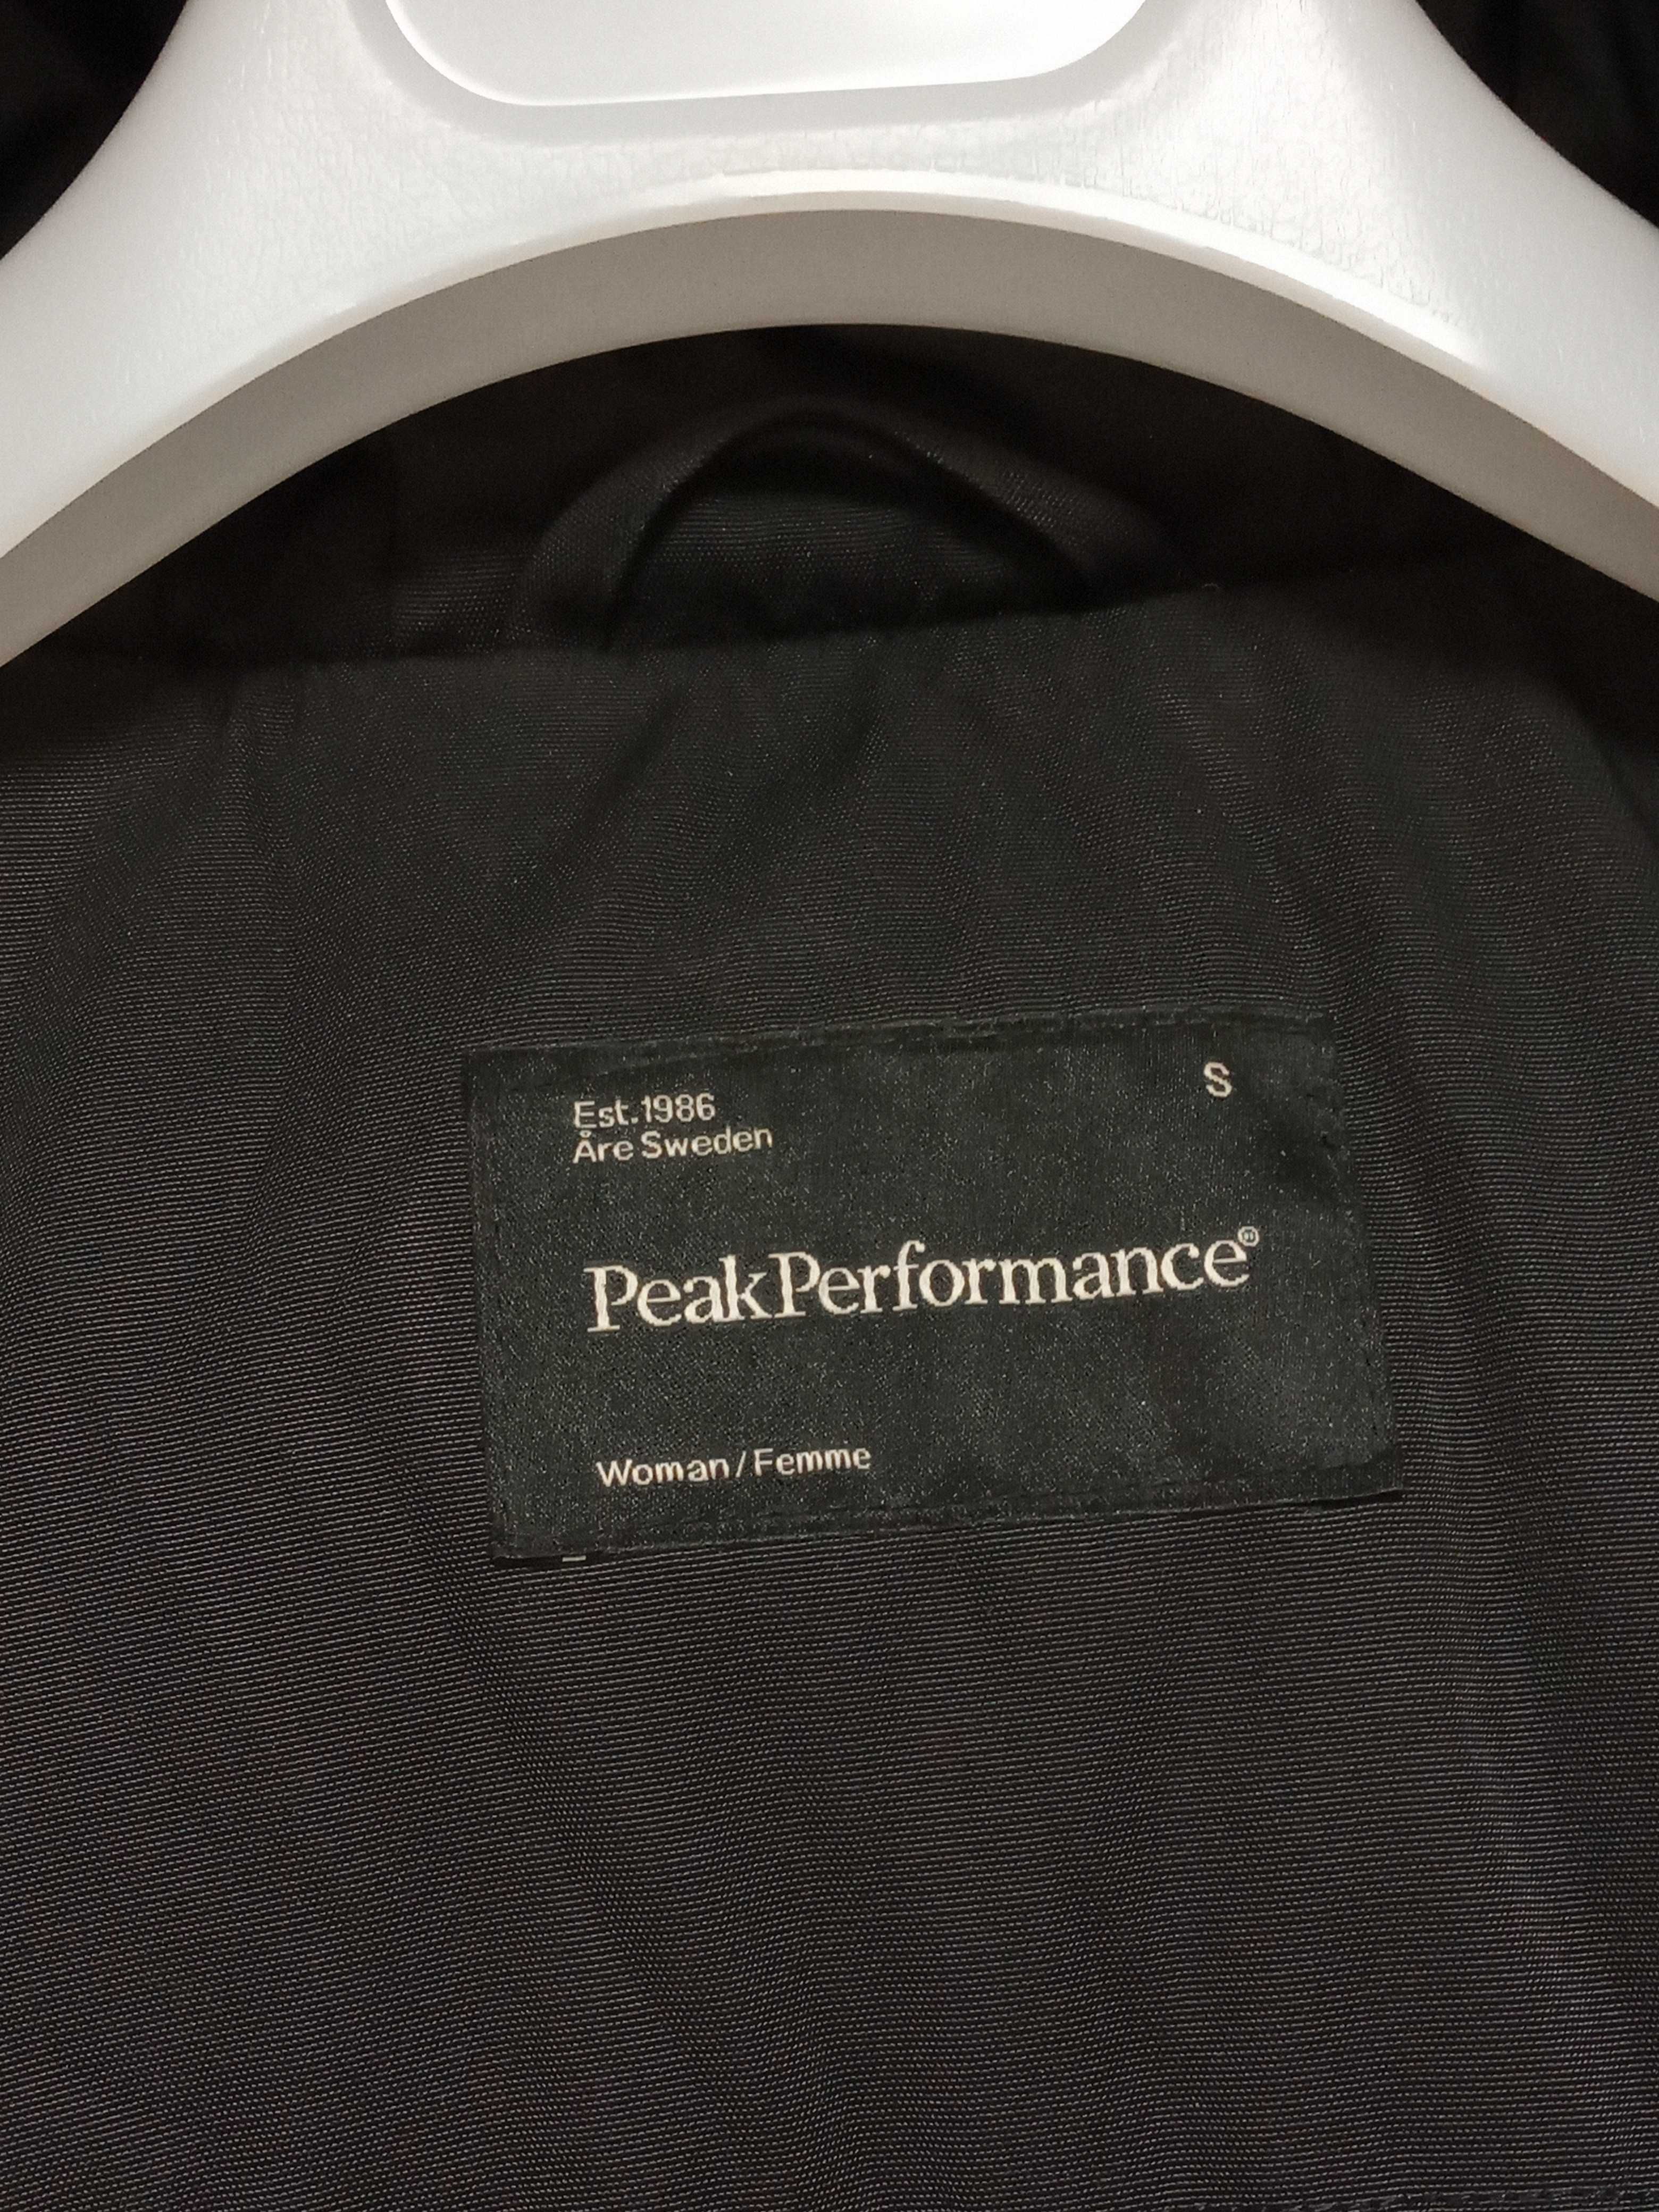 пуховик Peak Performance S размер пух peak performance outdoor